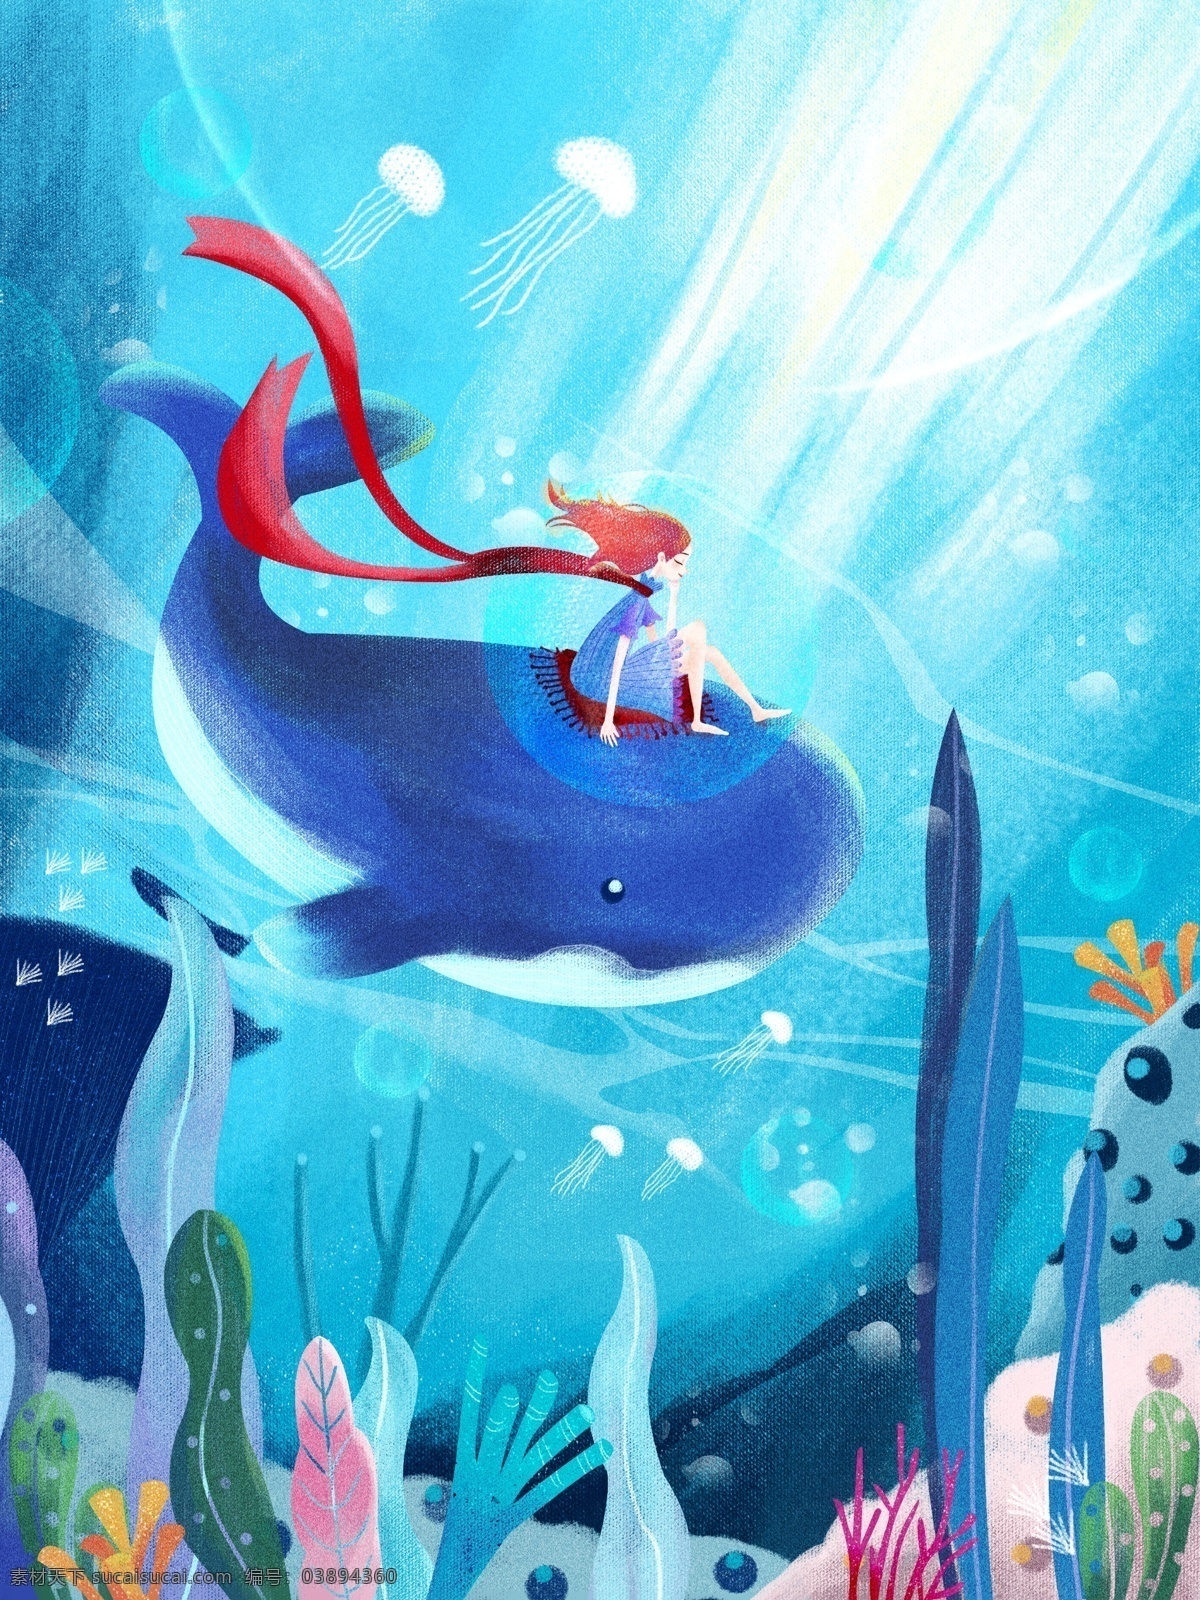 治愈 系 鲸鱼 女孩 唯美 插画 红丝带 鲸鱼与女孩 深海 海底植物 梦幻 治愈系